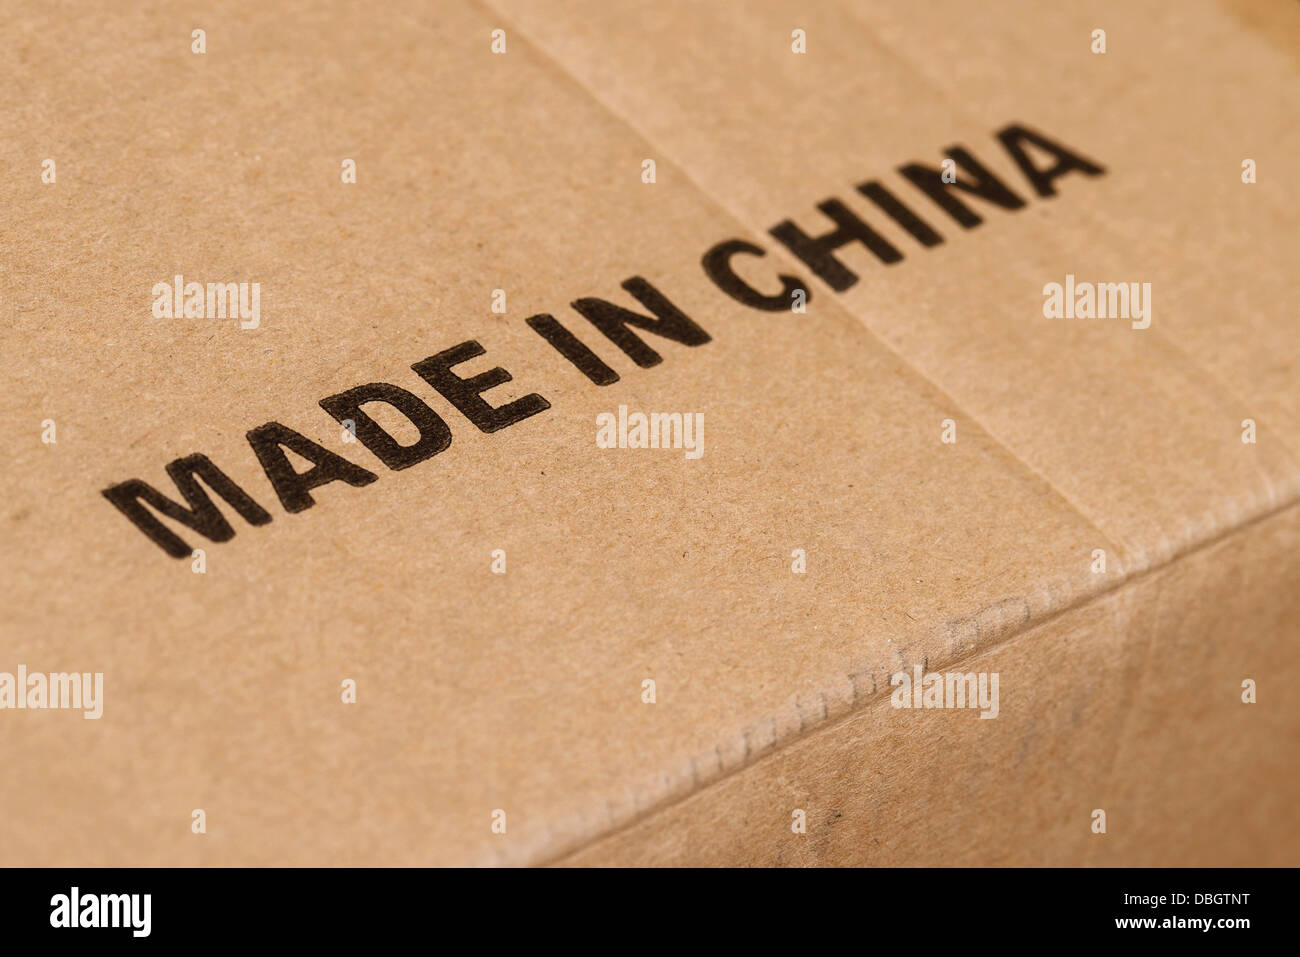 Fabbricato in Cina stampata su una scatola di cartone Foto Stock